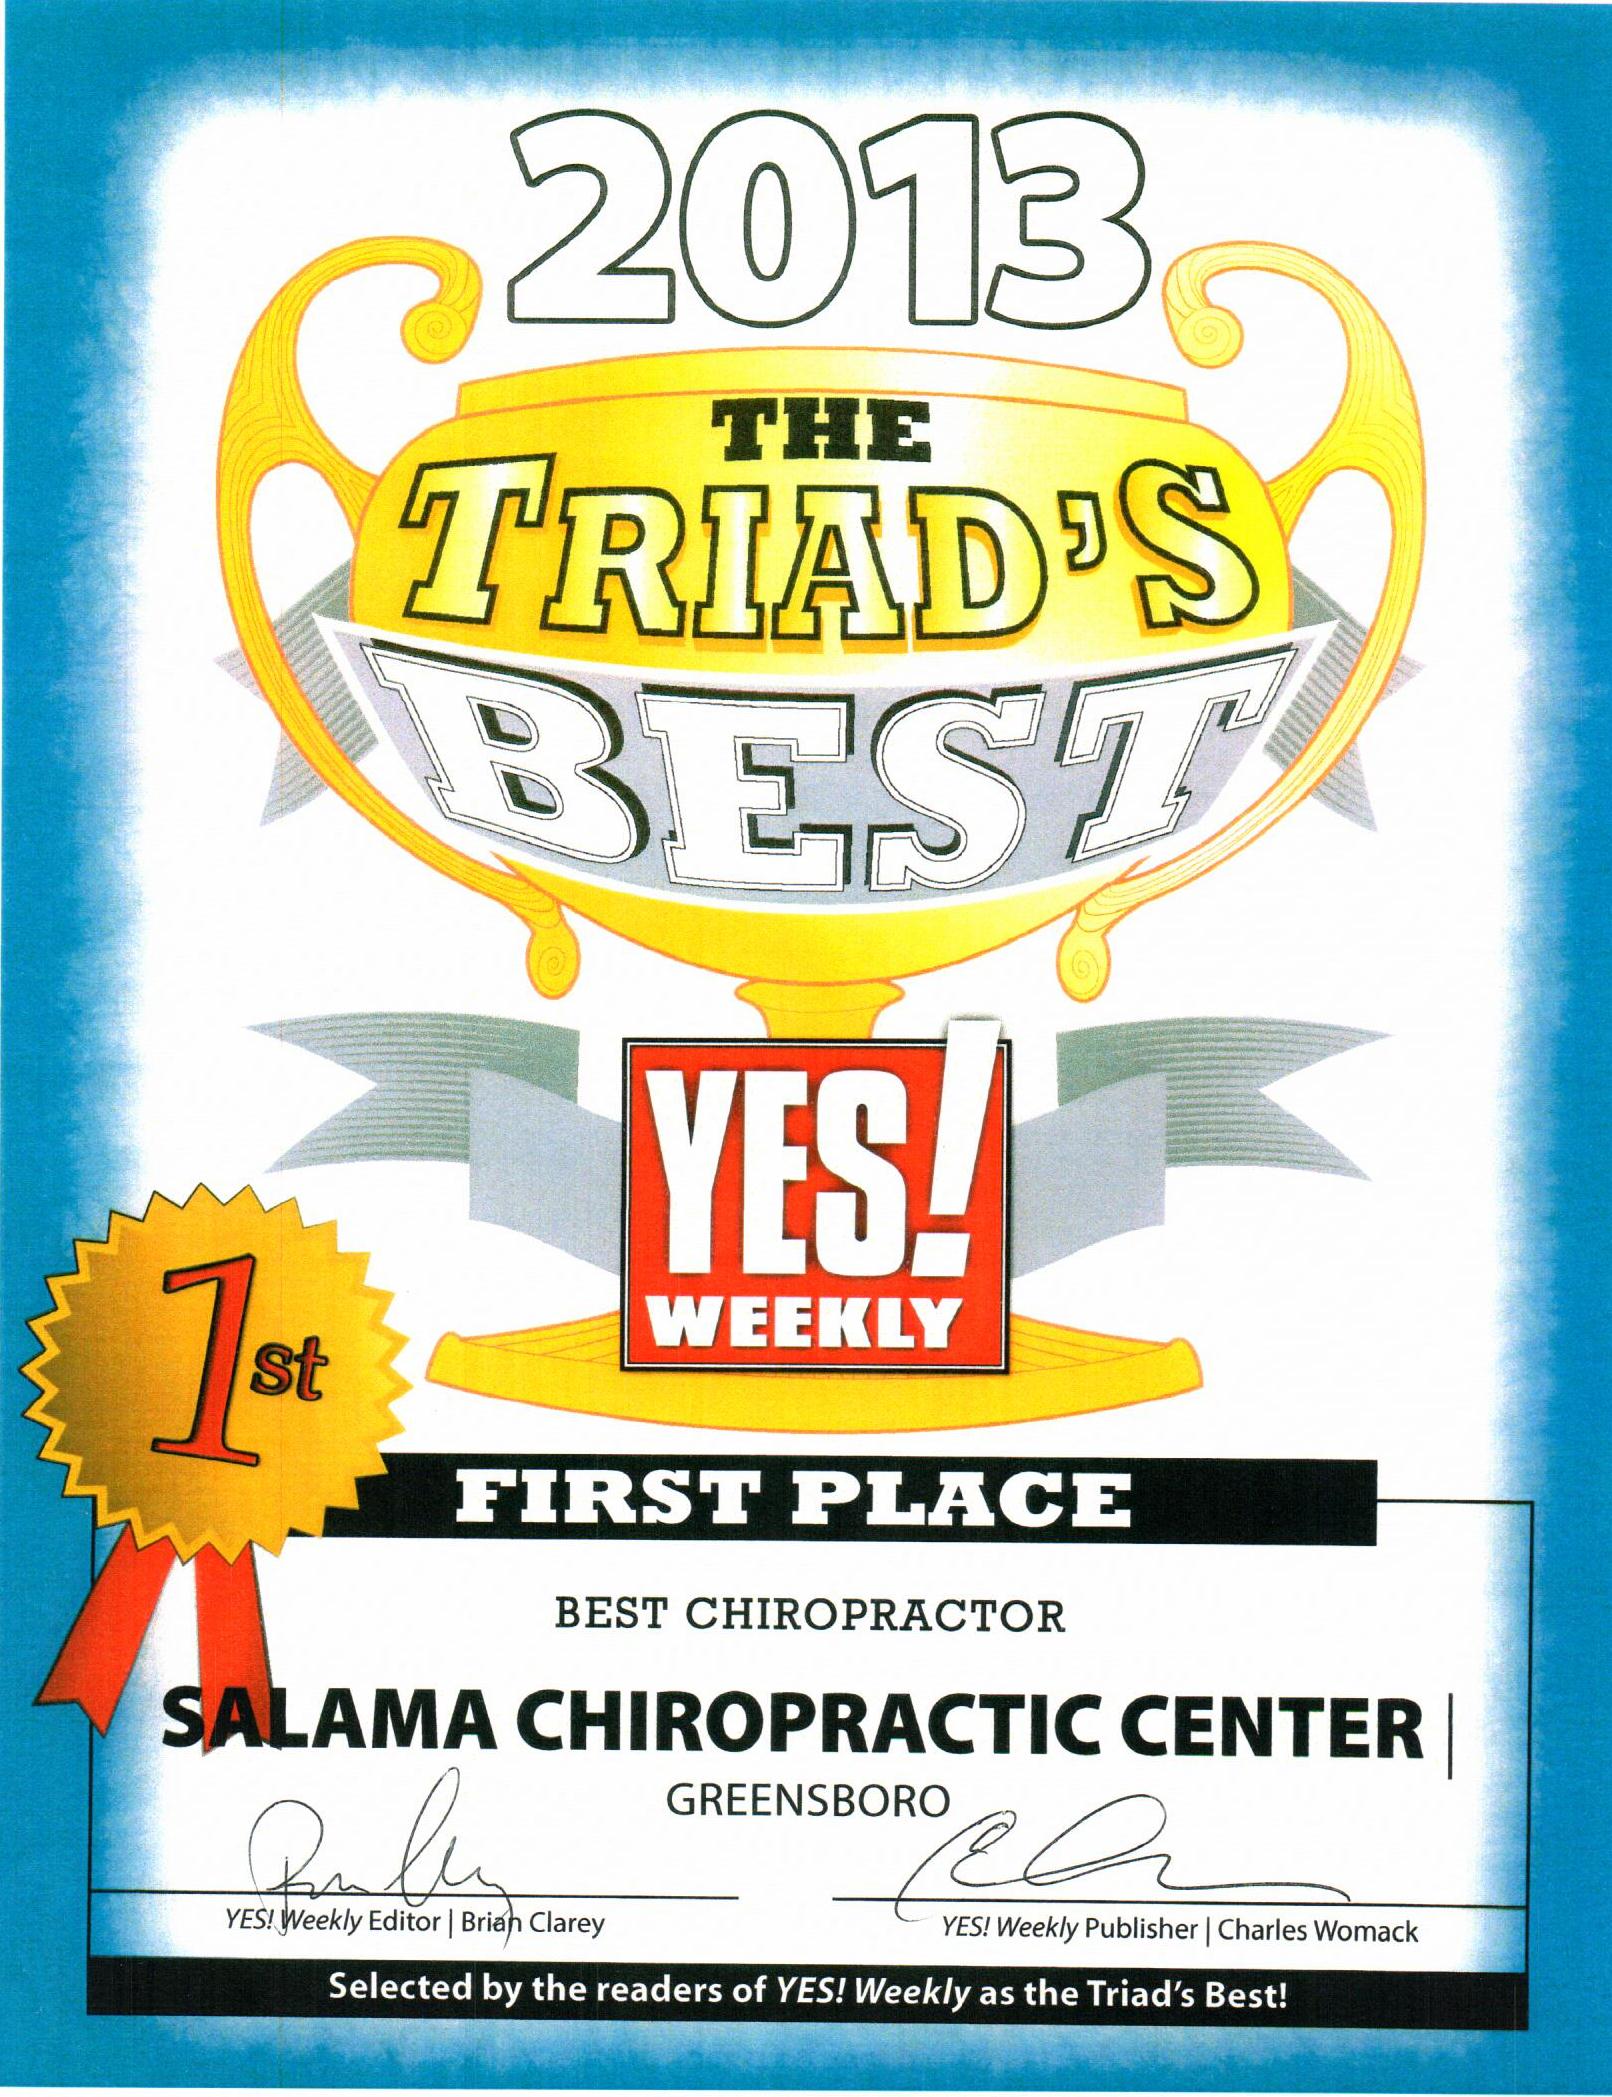 The Triad's Best Chiropractor 